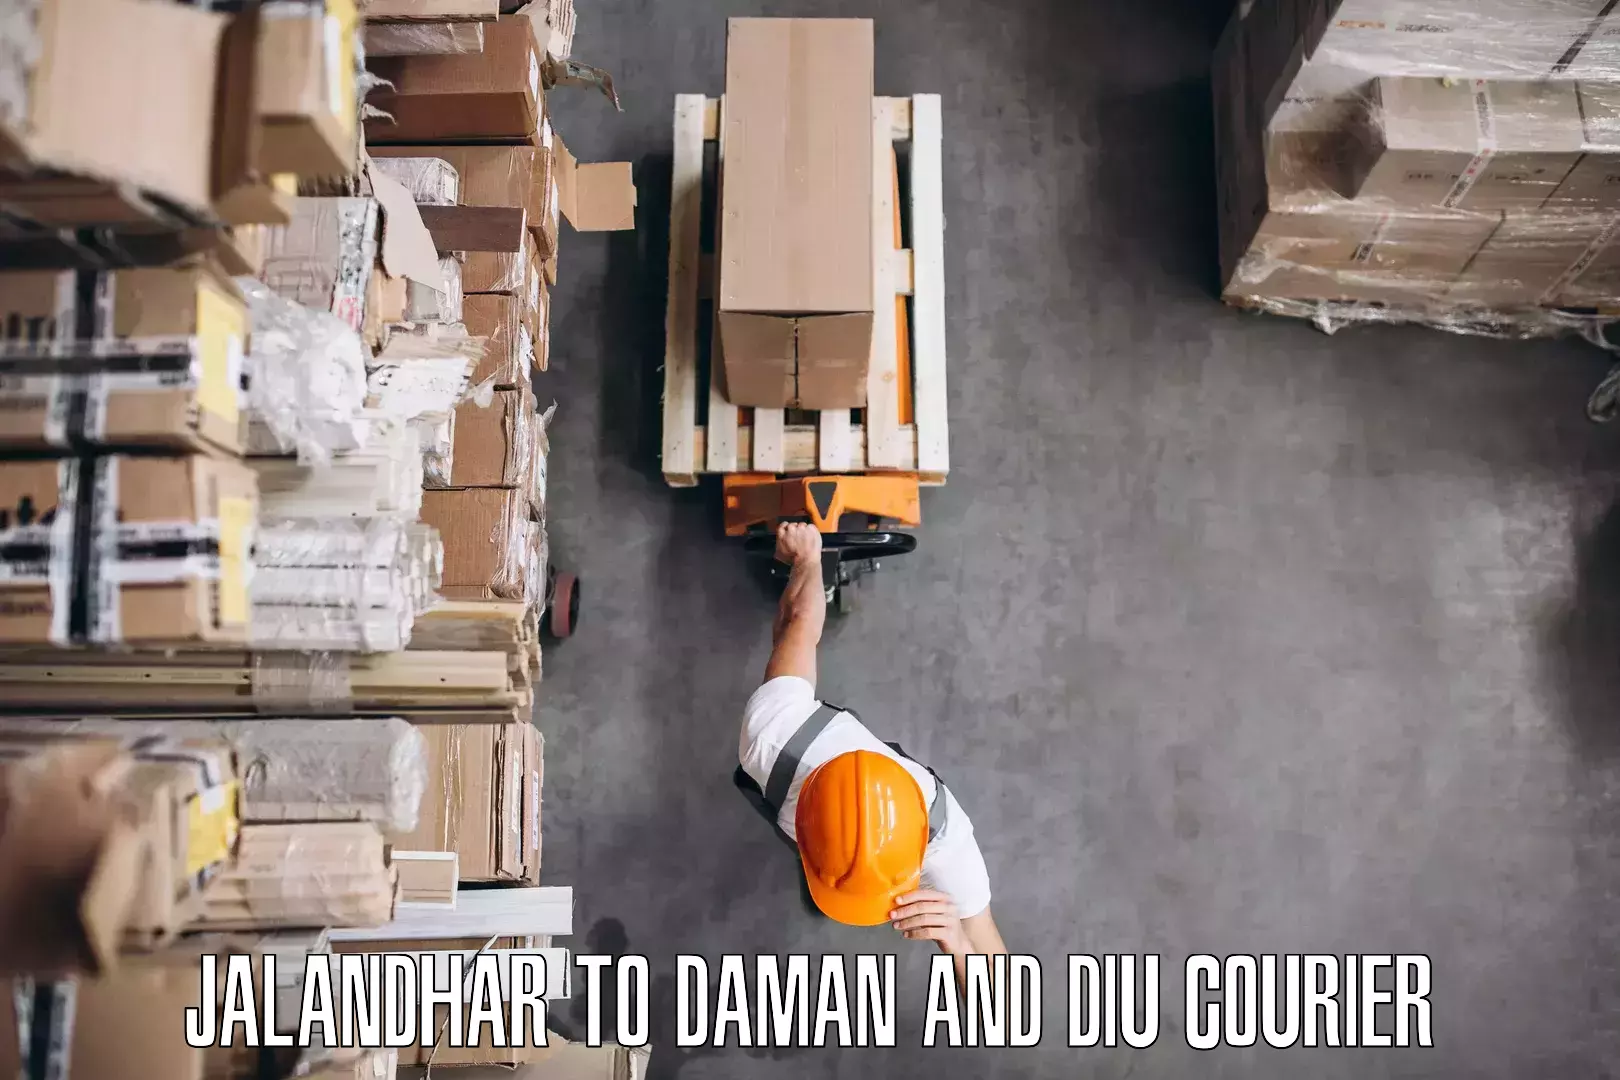 Furniture relocation experts Jalandhar to Daman and Diu